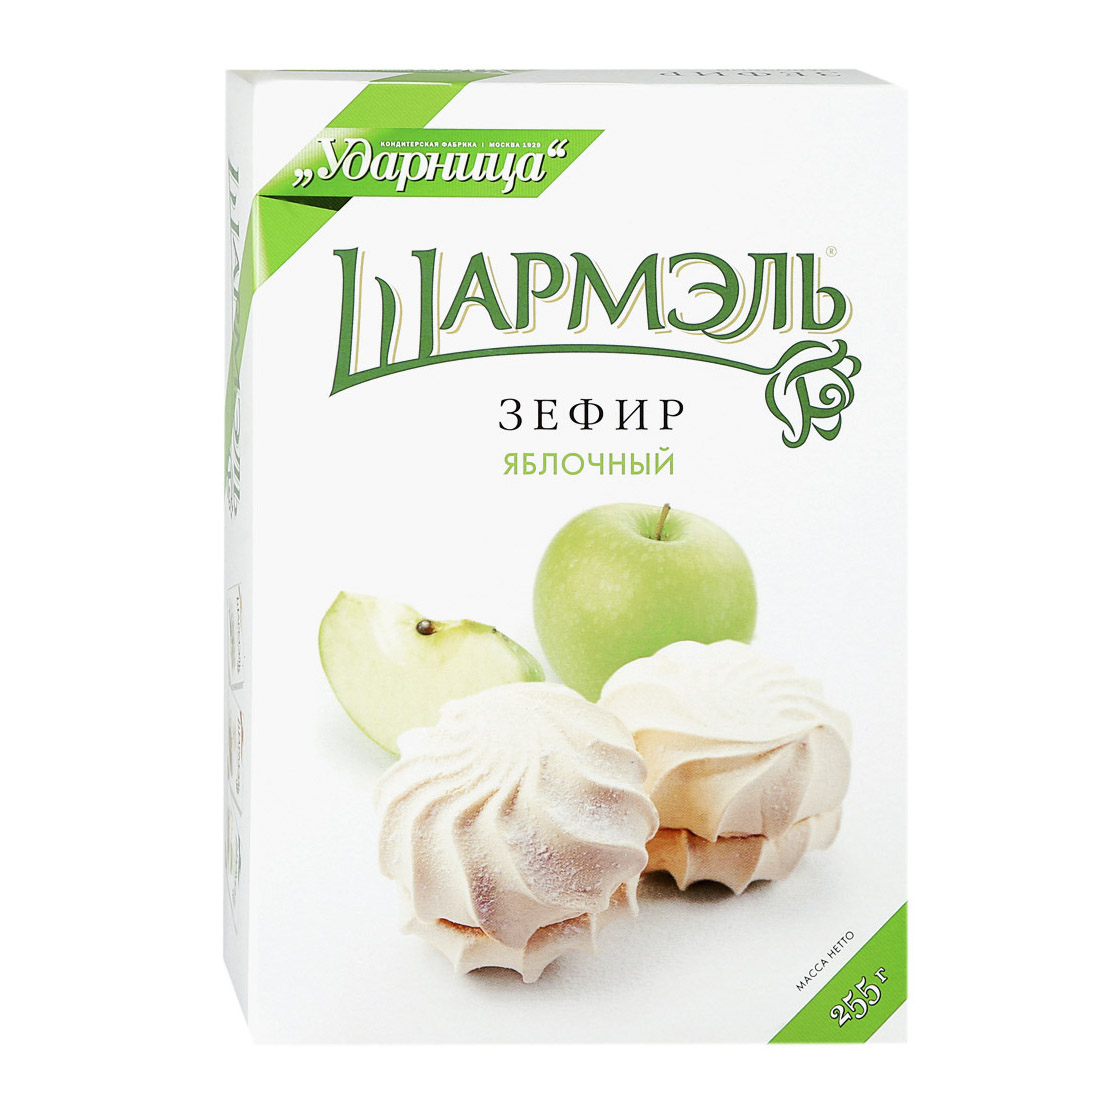 Зефир Шармэль яблочный 255 г